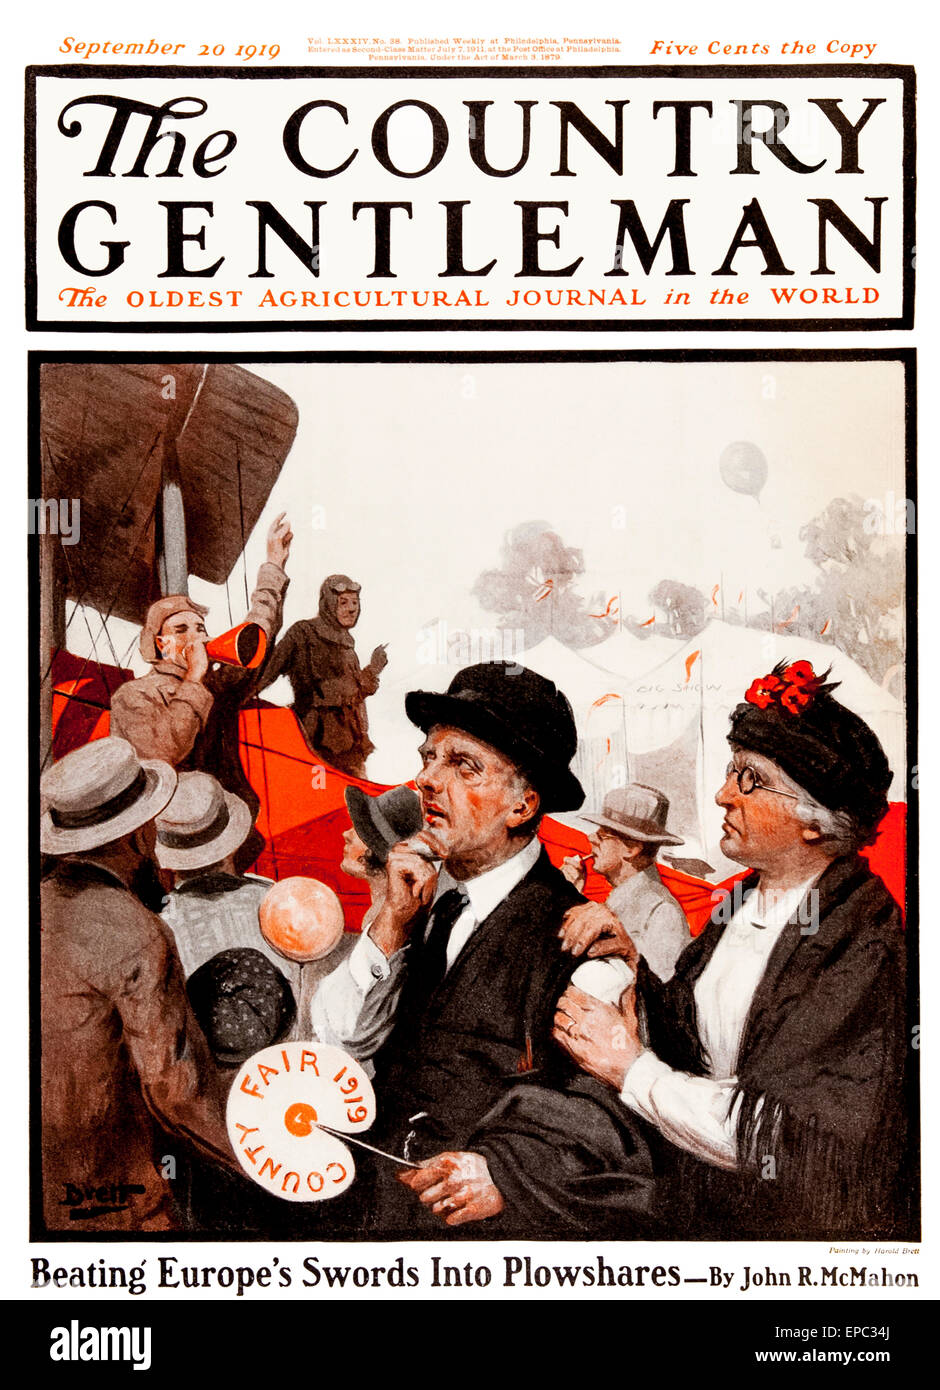 Country gentlemen. Country Gentleman. The Gentlemen обложка. The Country Gentleman Magazine Cover. The Gentleman's Magazine Кейв.